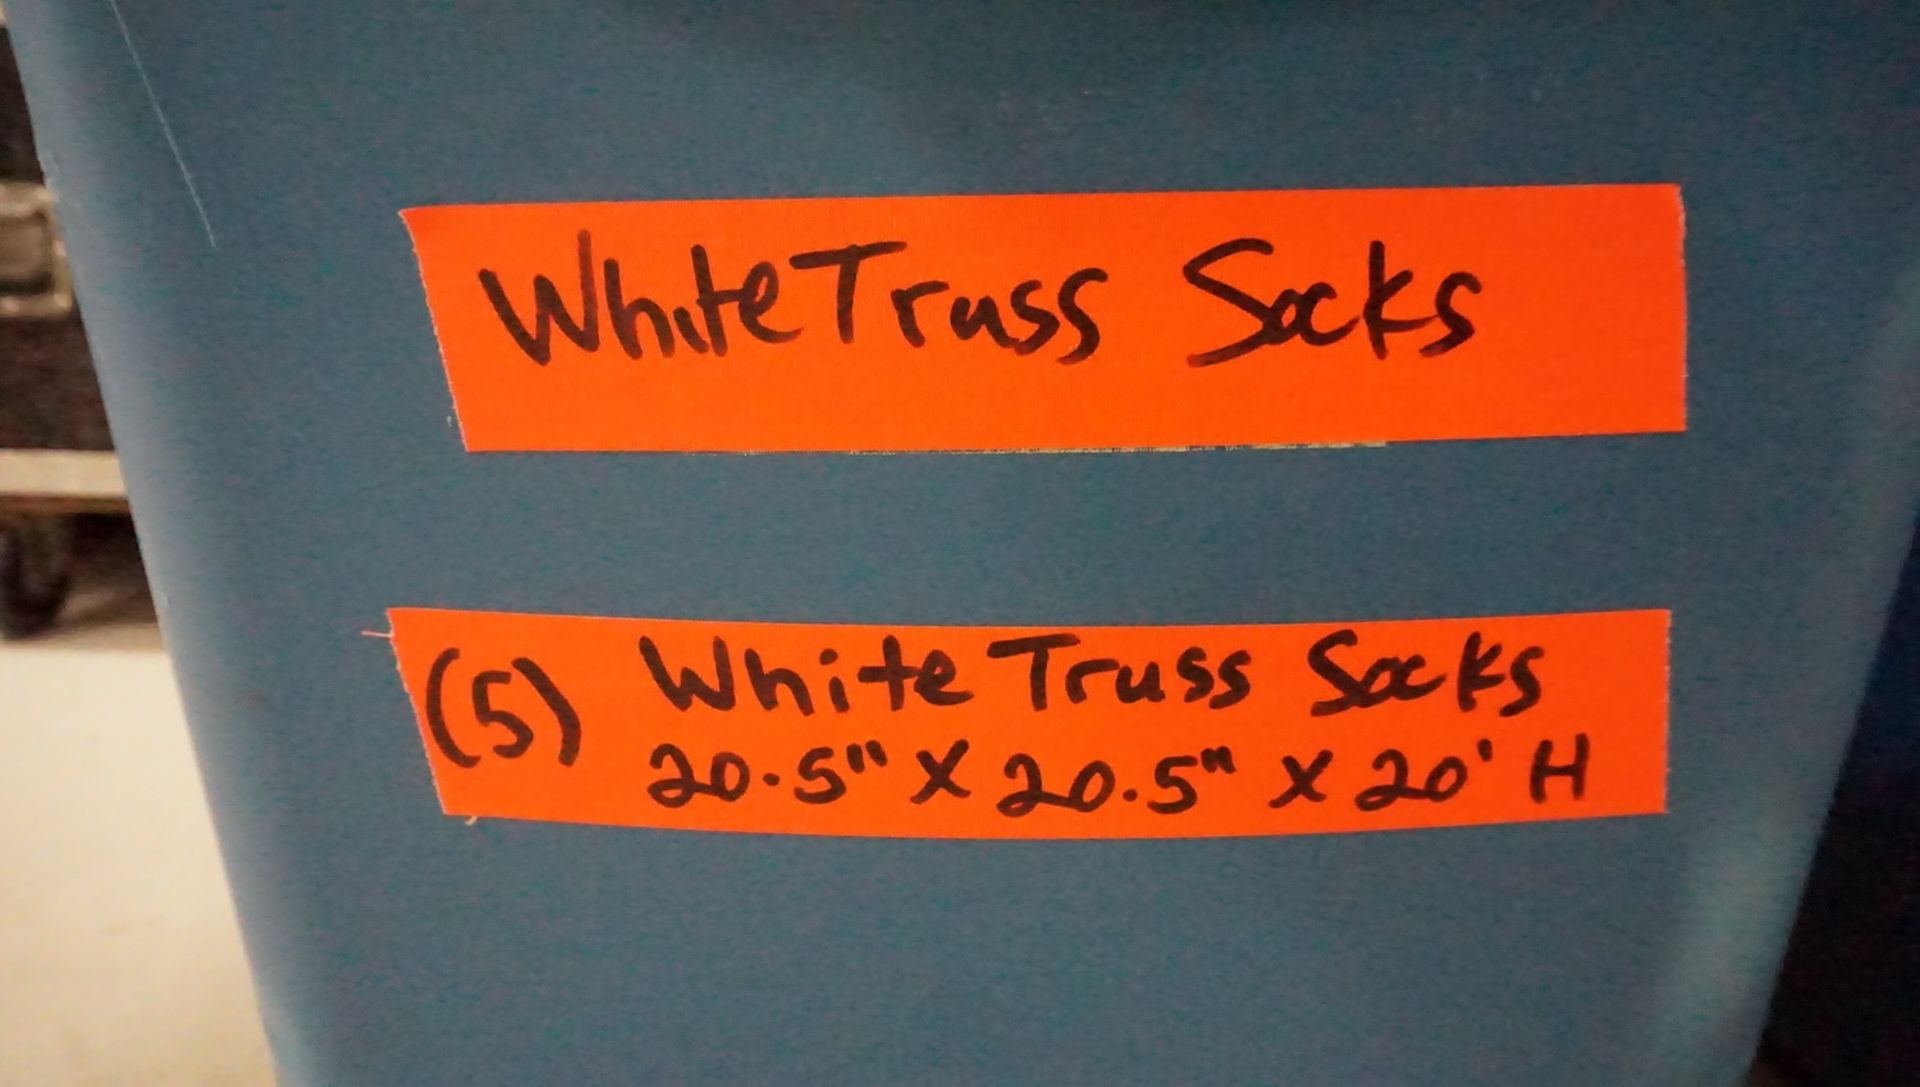 LOT - WHITE 20.5 X 205. X 20"H TRUSS SOCKS (5 PCS) - Image 2 of 2